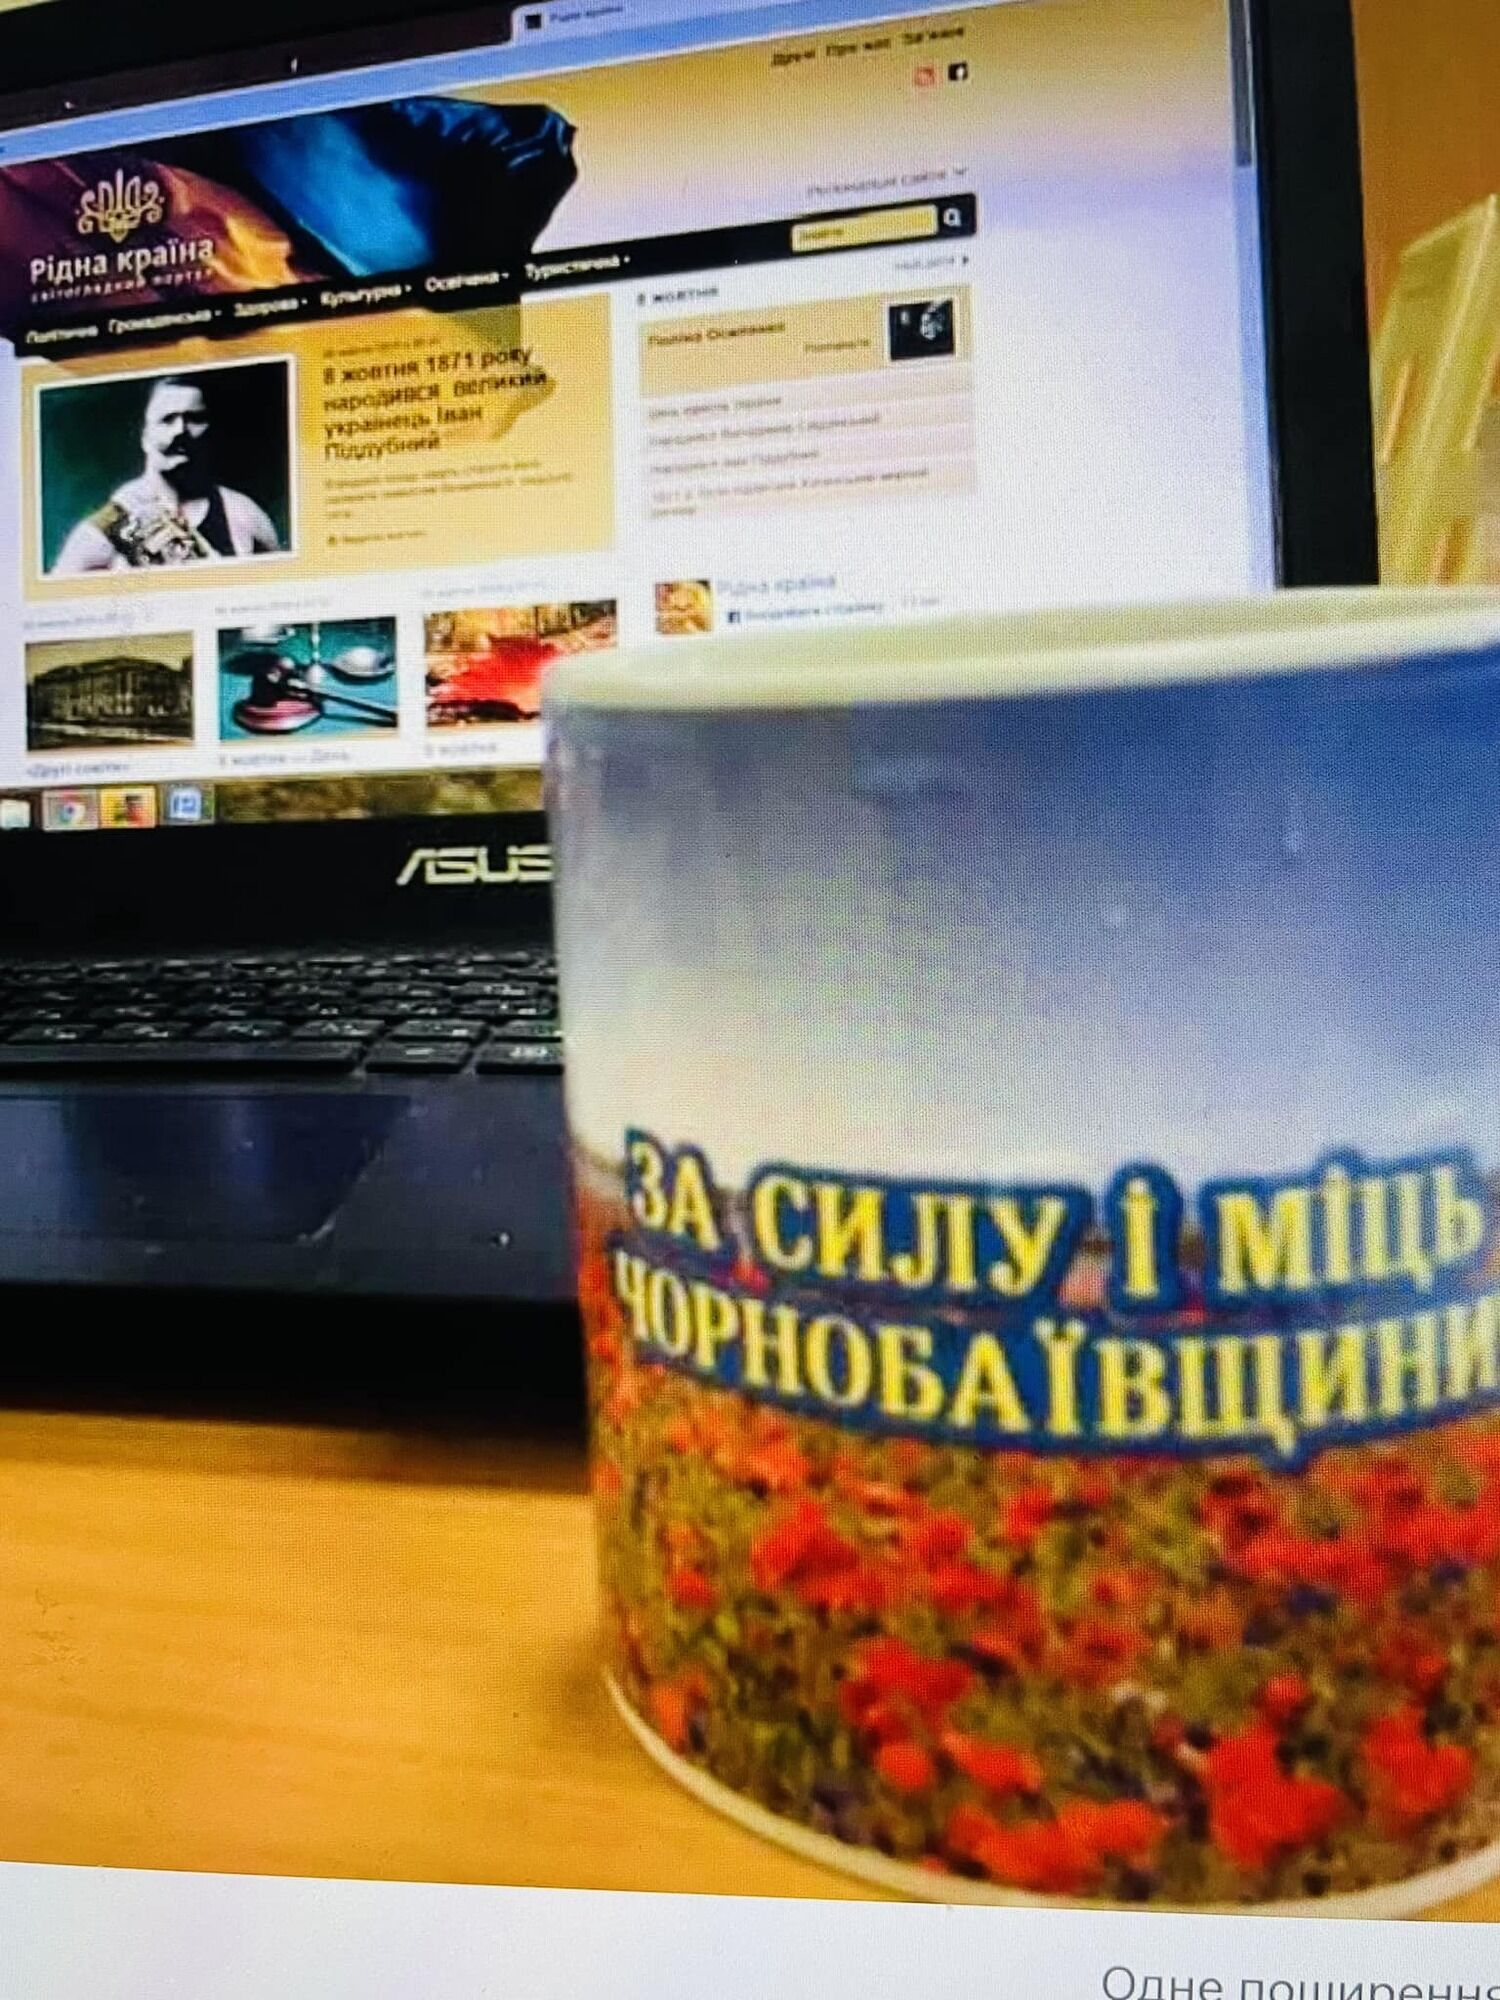 Пять фактов об имениннике Иване Поддубном как великом и непобедимом украинце